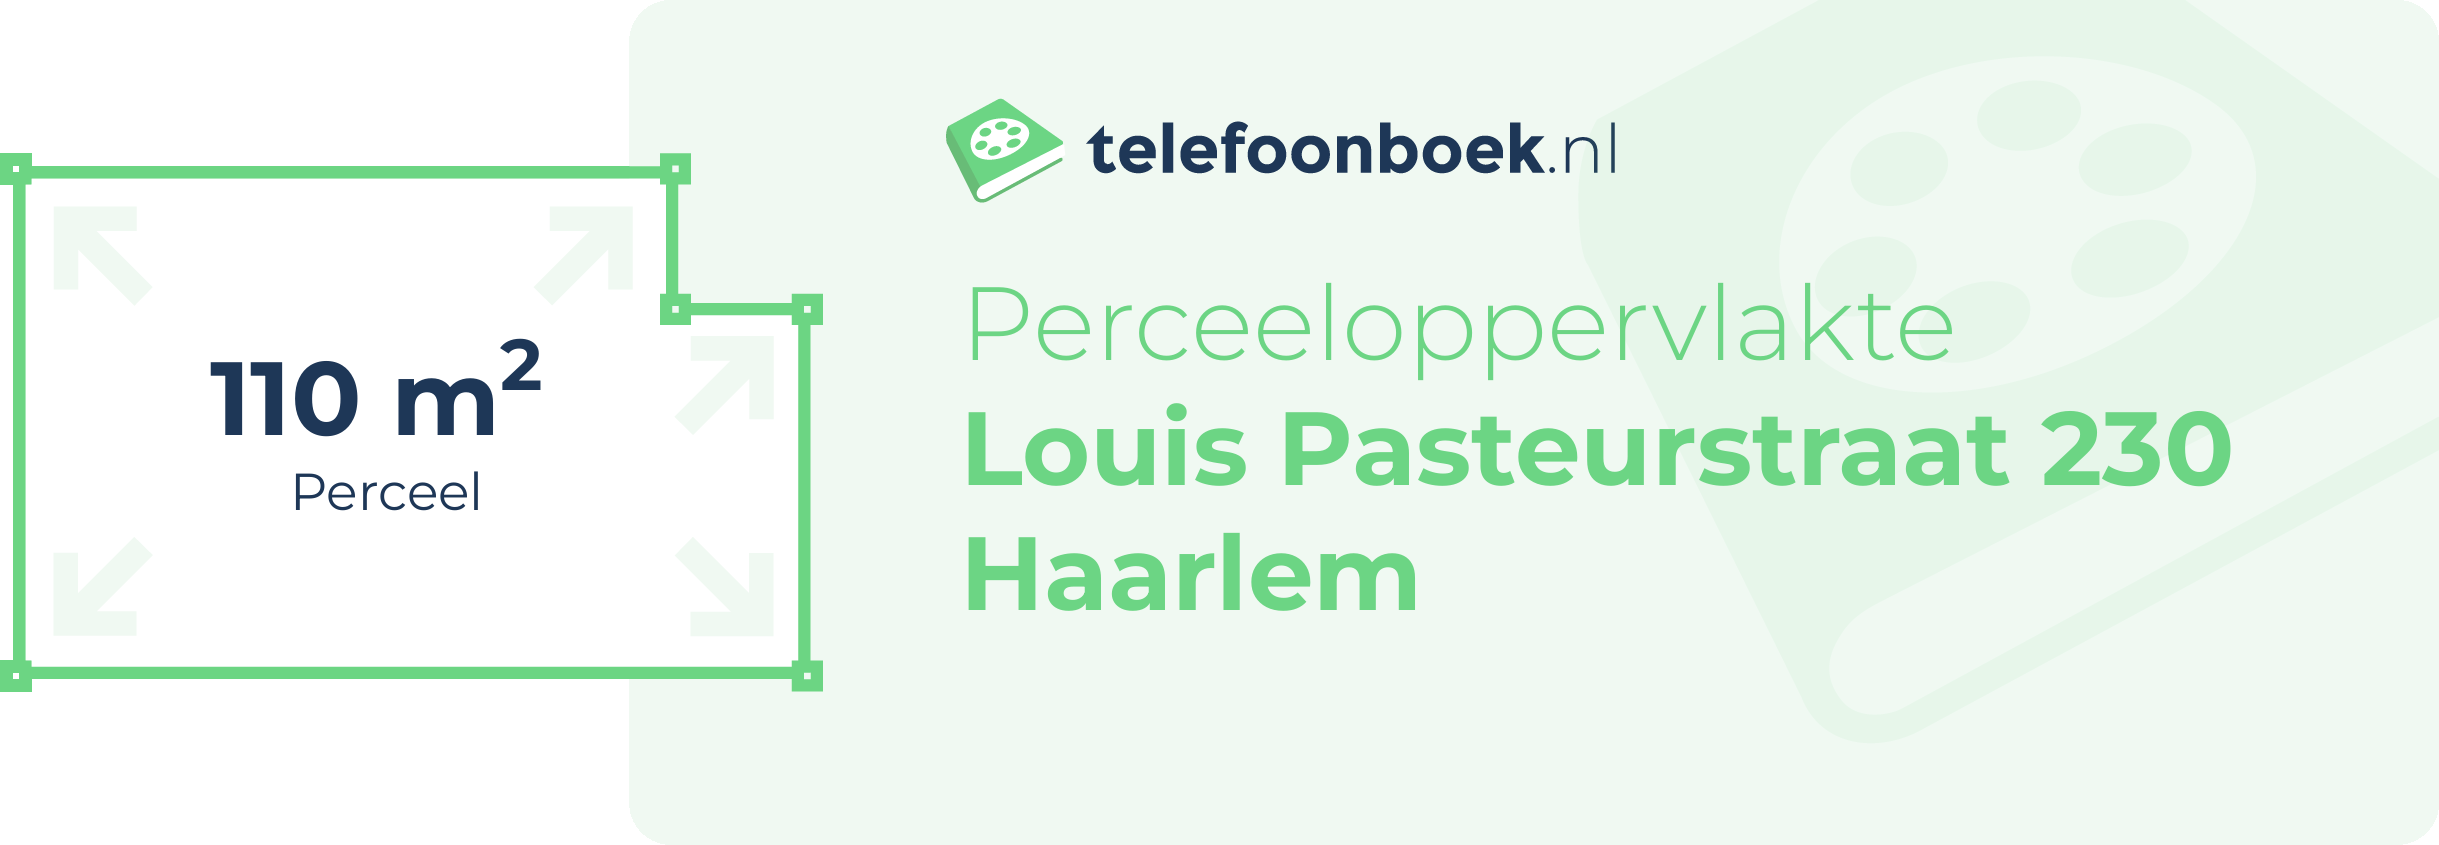 Perceeloppervlakte Louis Pasteurstraat 230 Haarlem